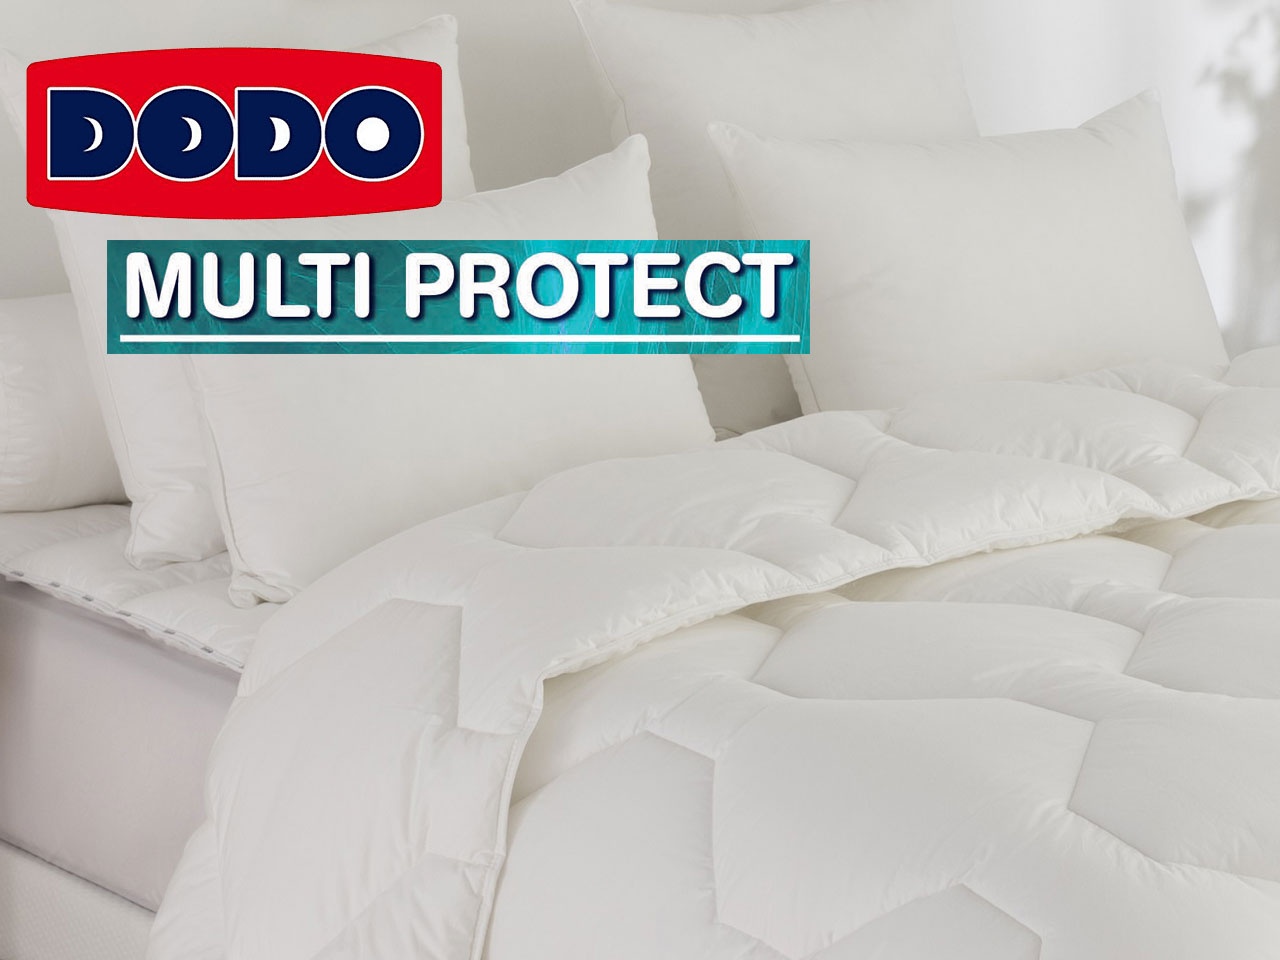 Dodo lance la gamme Multi-Protect